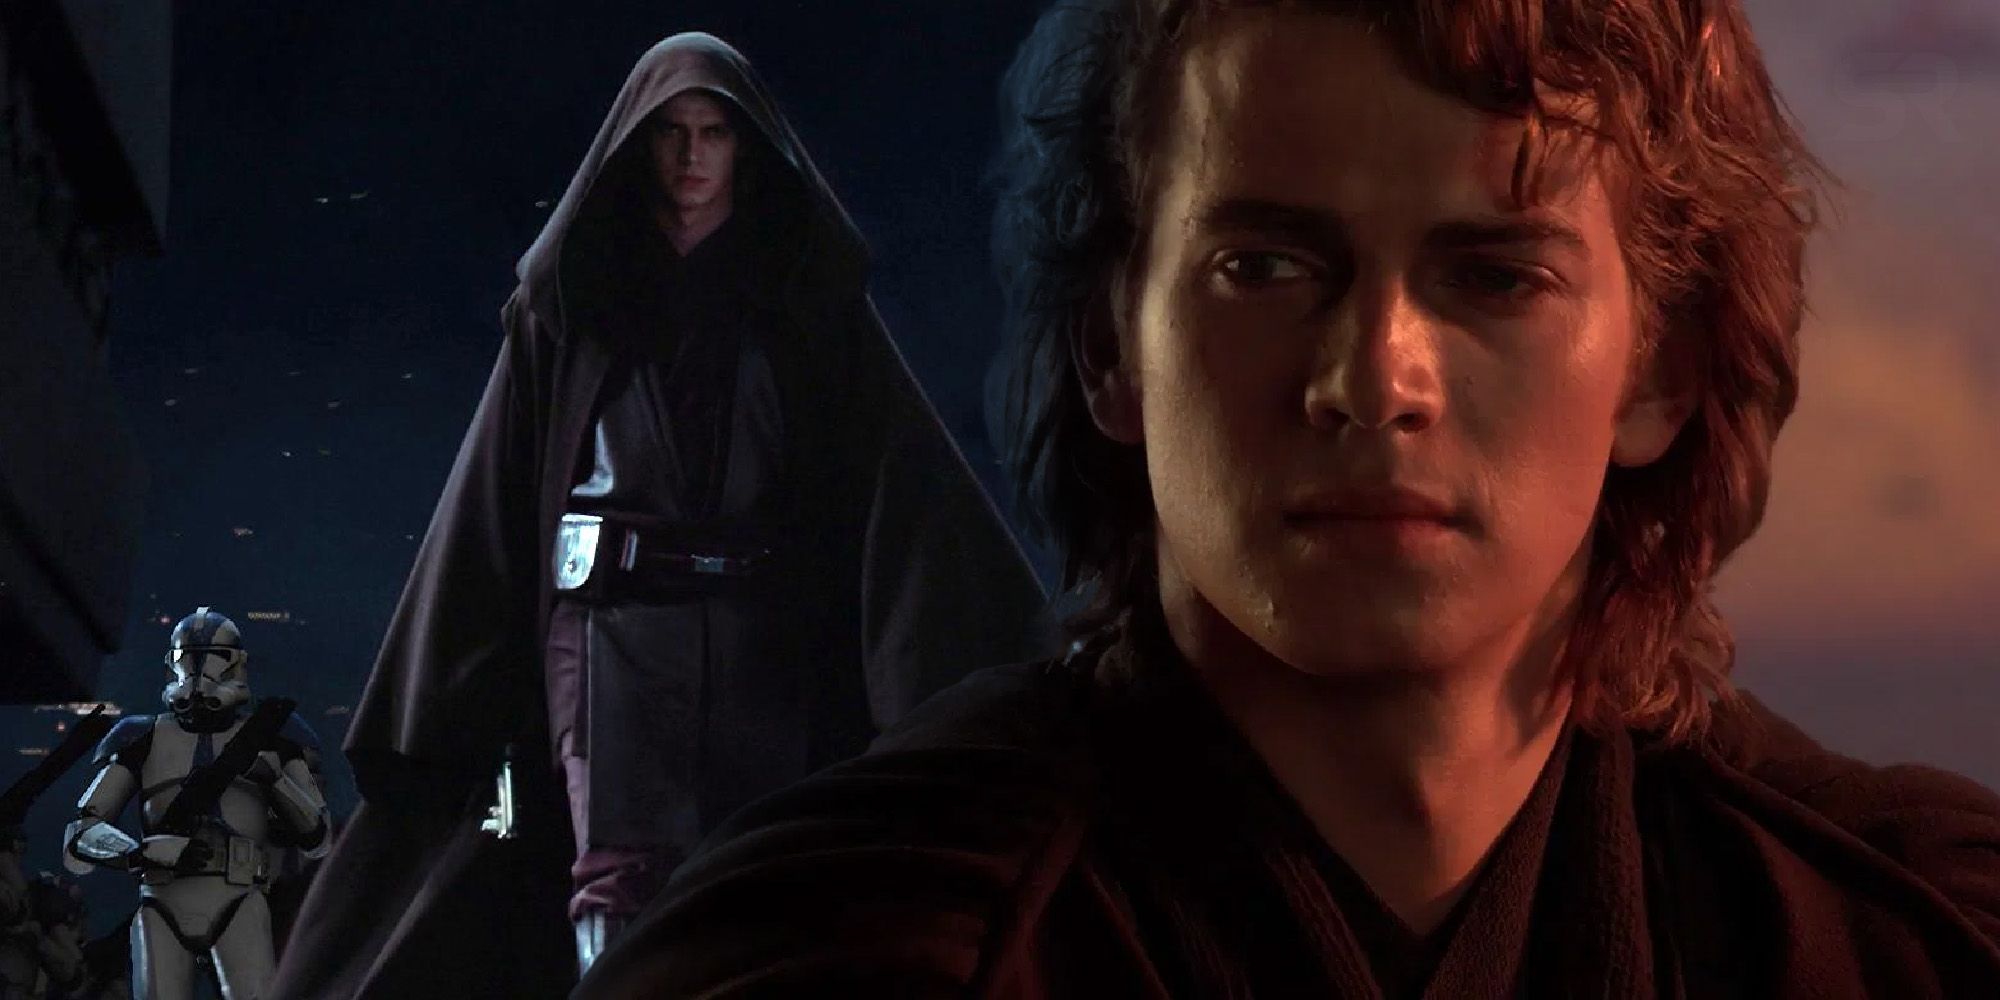 Hayden christensen Anakin Star Wars Revenge of the sith order 66